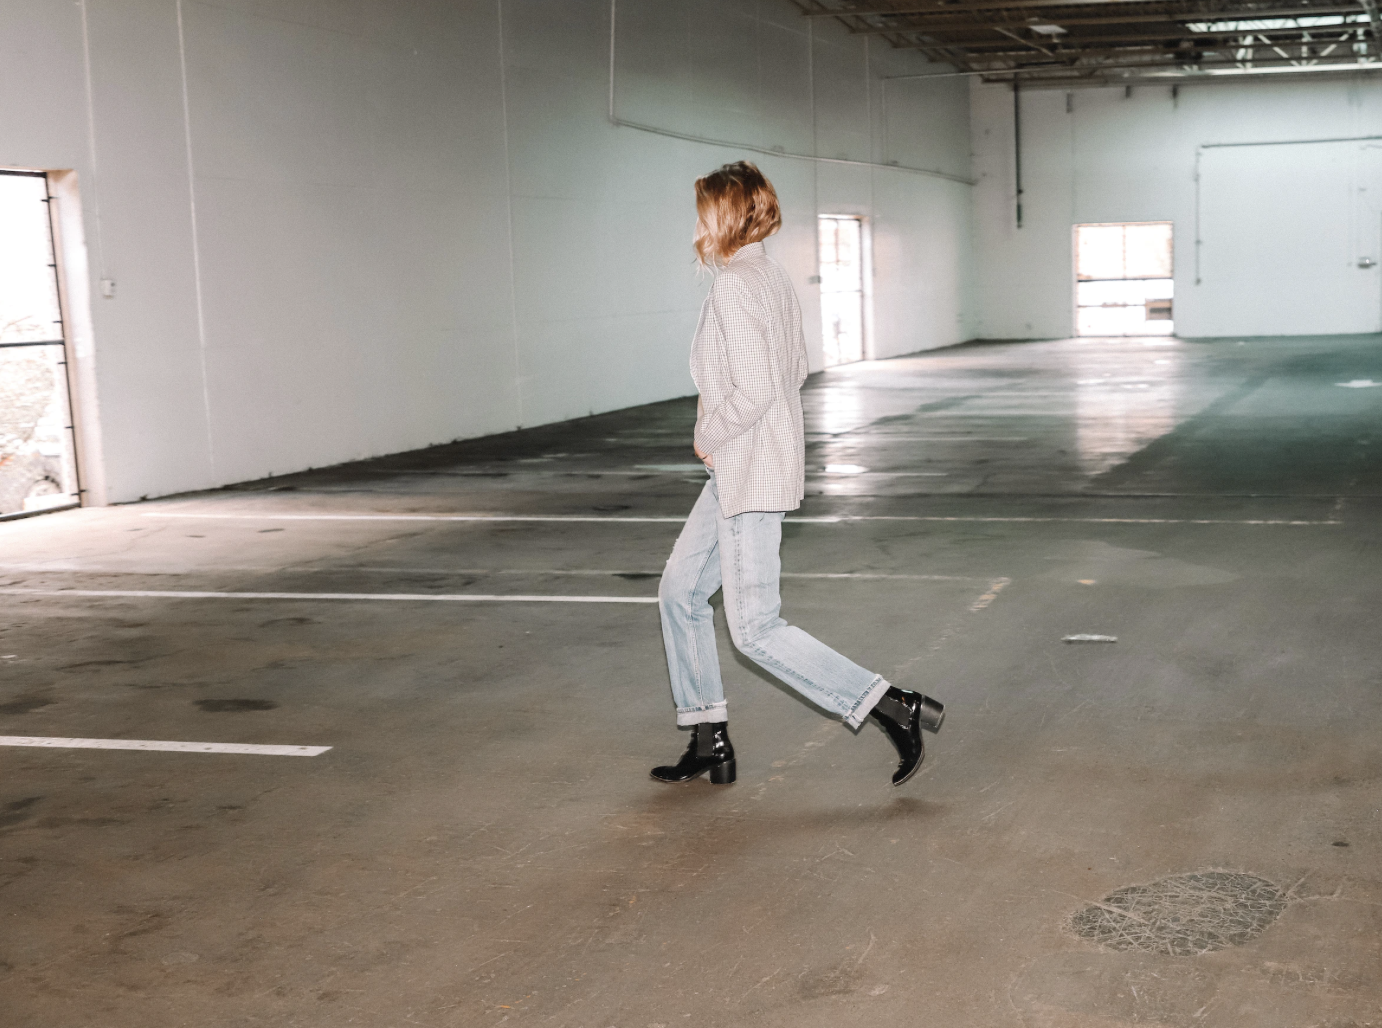 A model walking in a parking garage